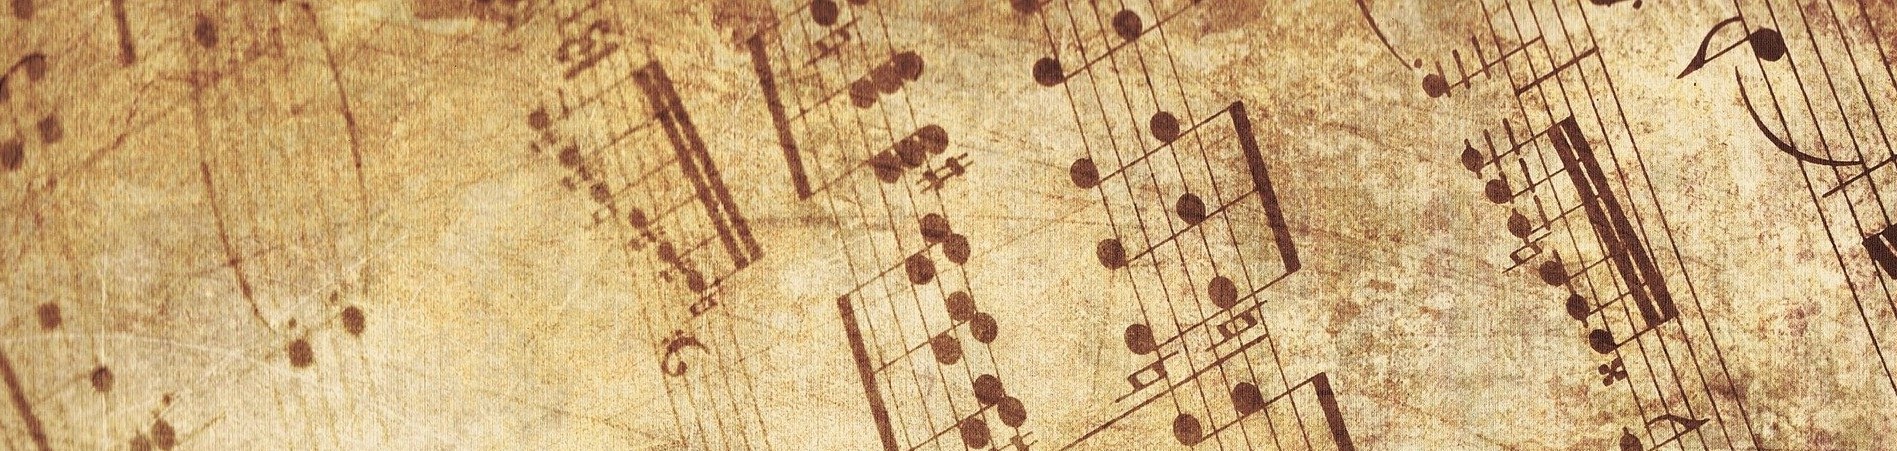 Blasorchesternoten Auf der Vogelwiese arr. Egidius - Titelbild